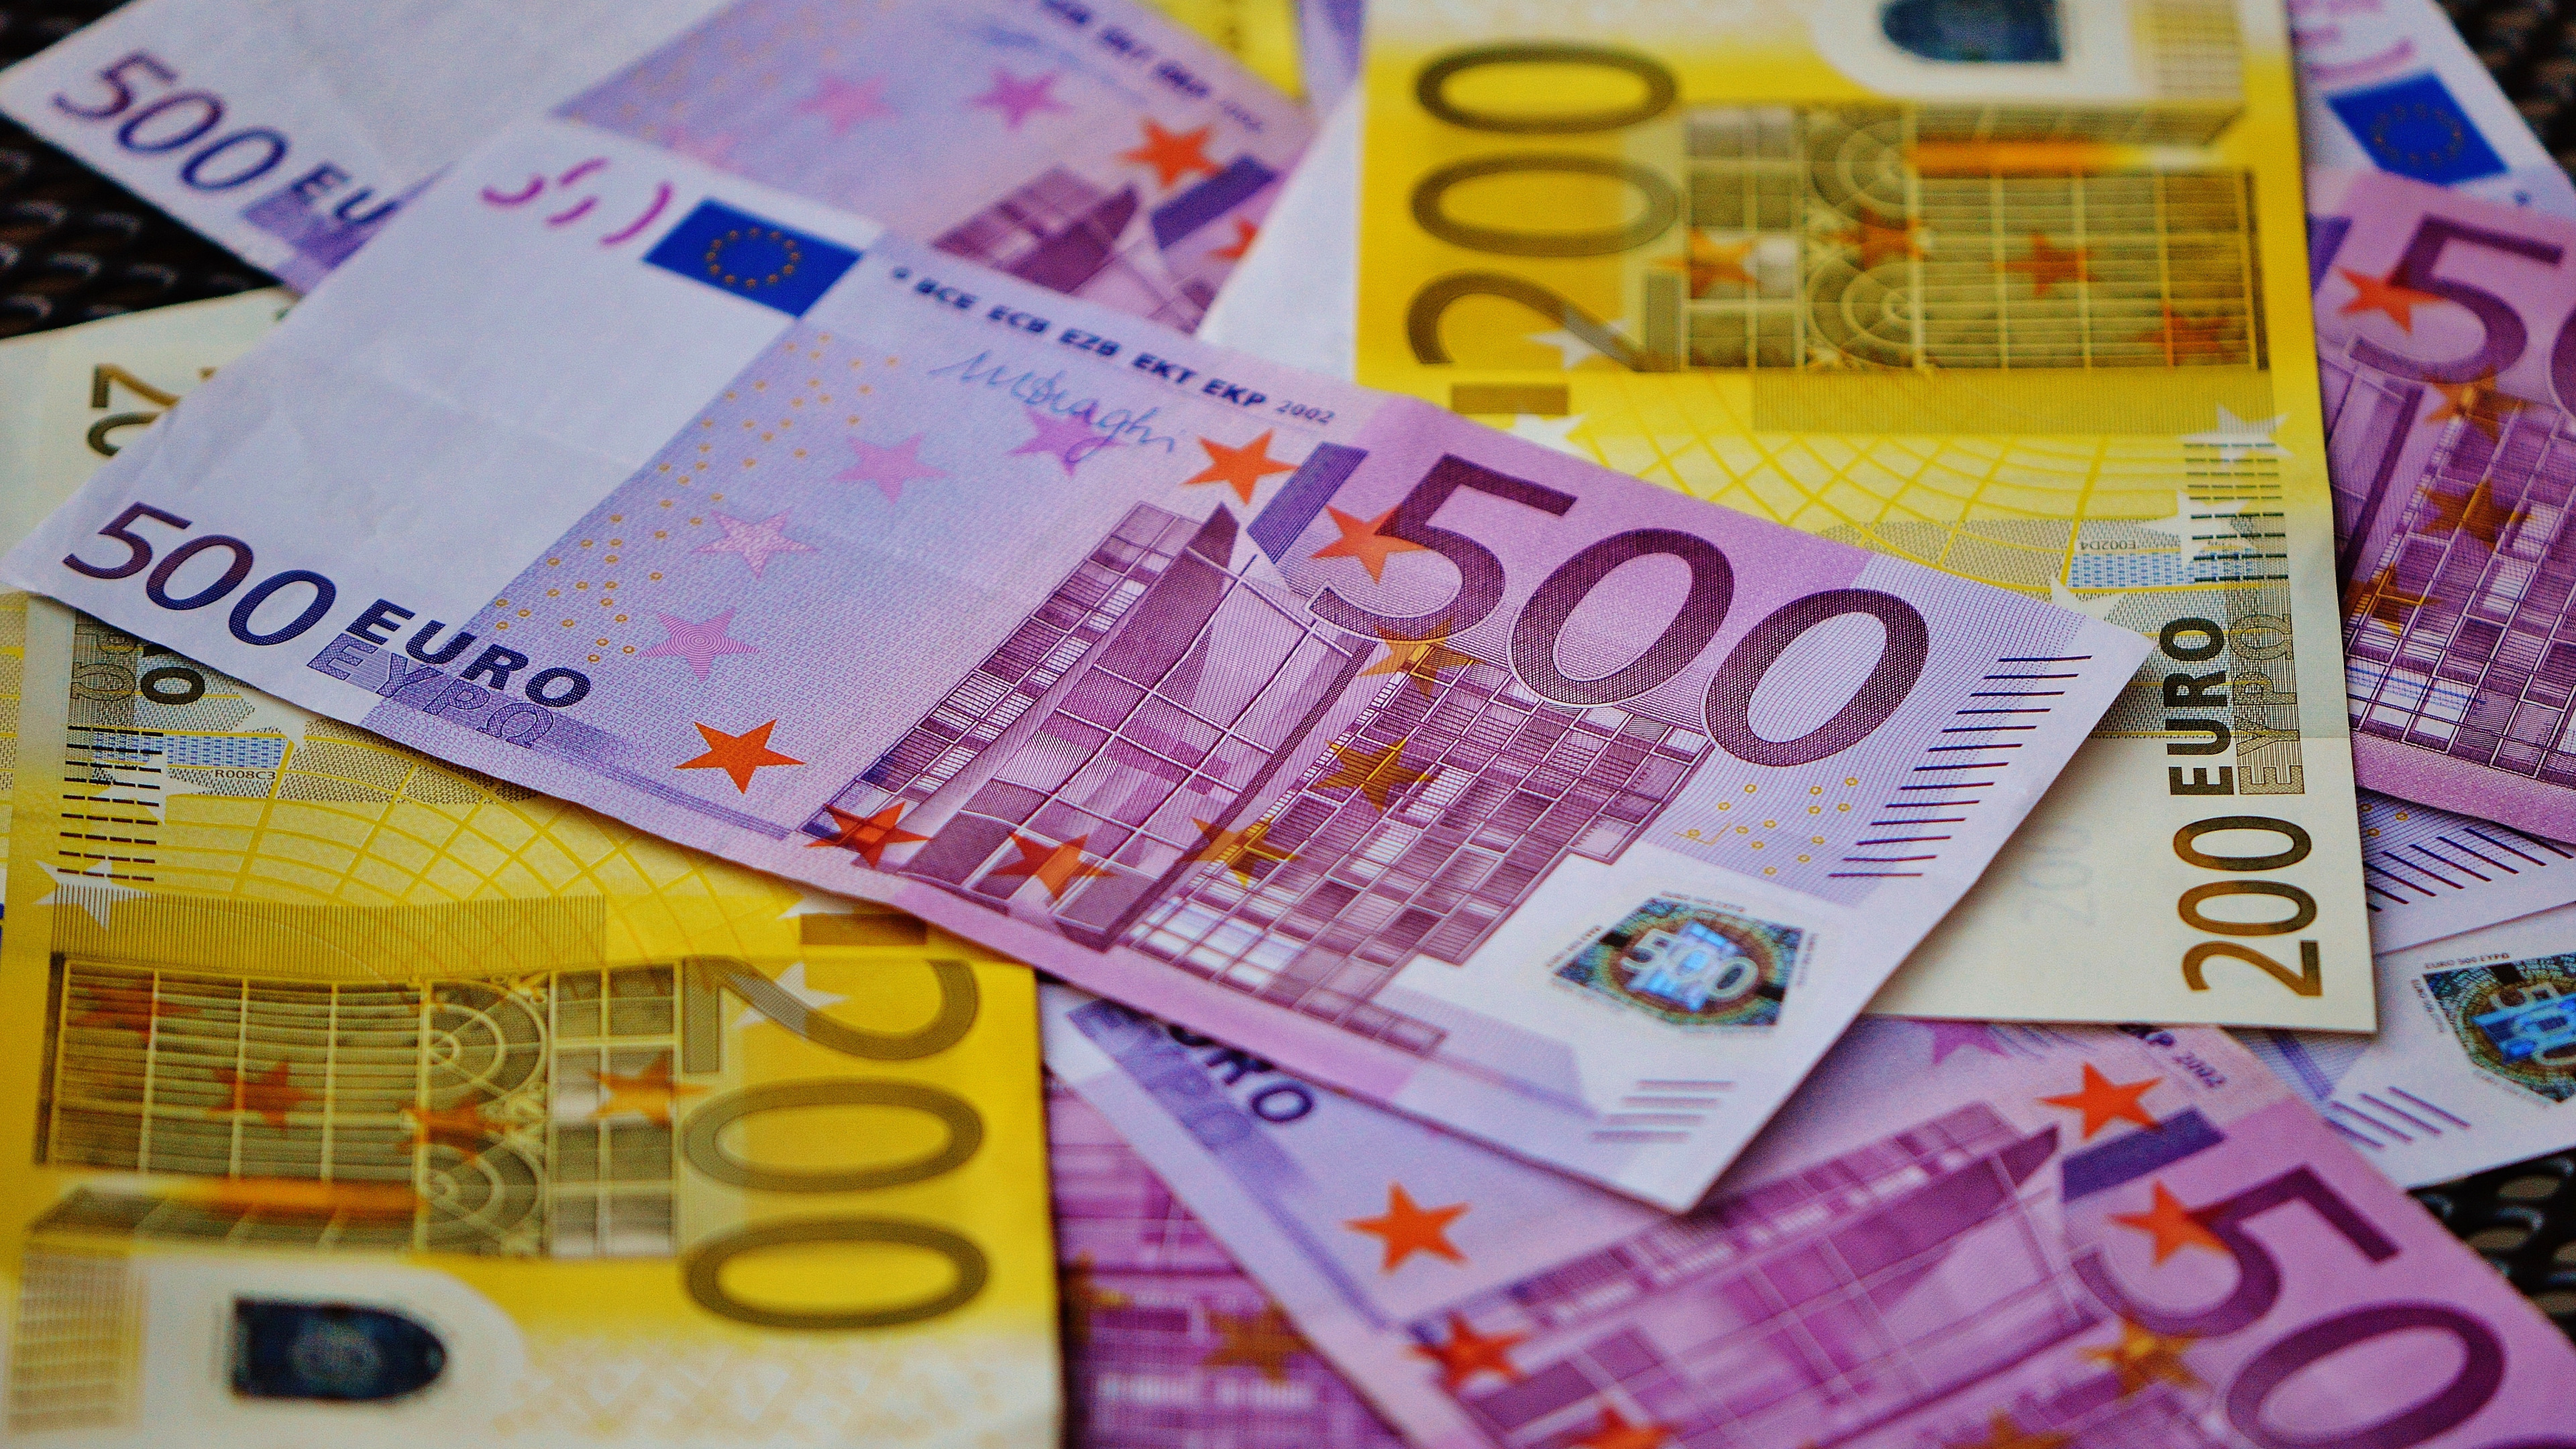 Euro currency. Деньги евро. Евро валюта. Банкноты евро. Денежные купюры евро.